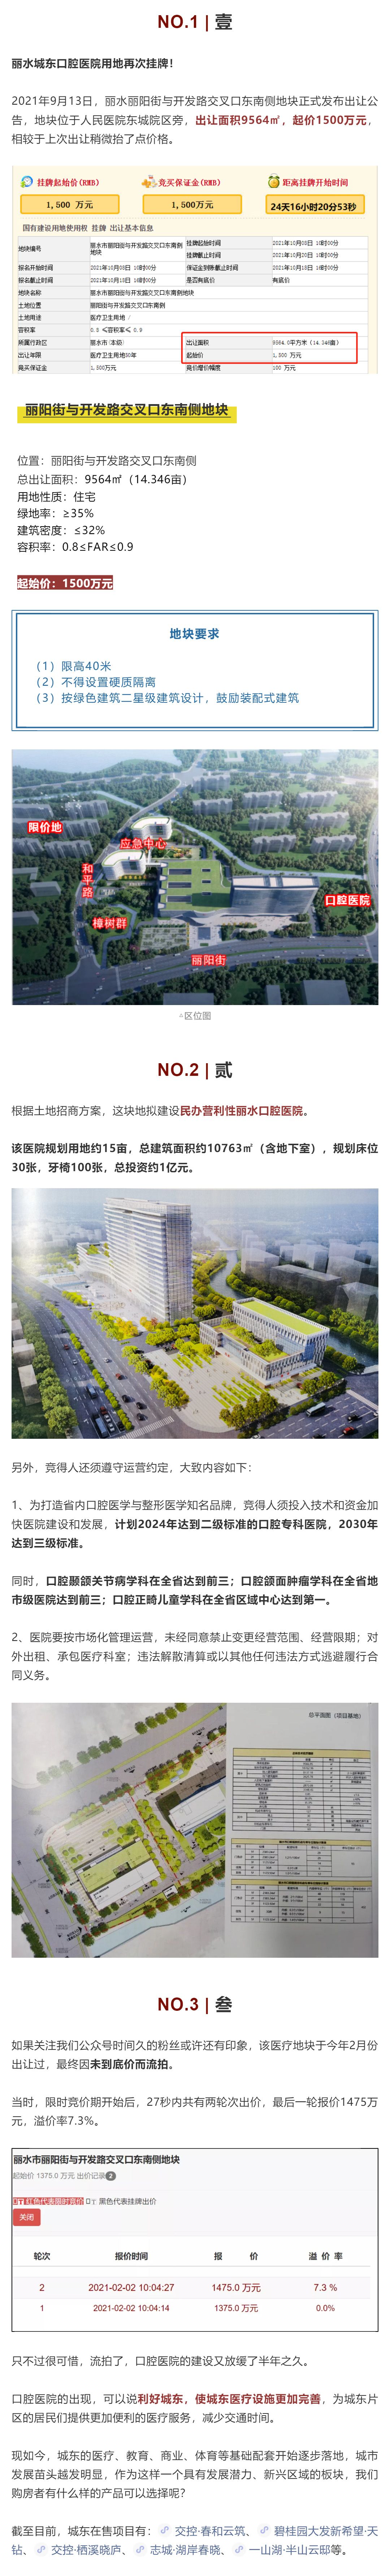 丽水城区再次挂牌土地，未来要建口腔医院，位置就在……_壹伴长图1 (1).jpg